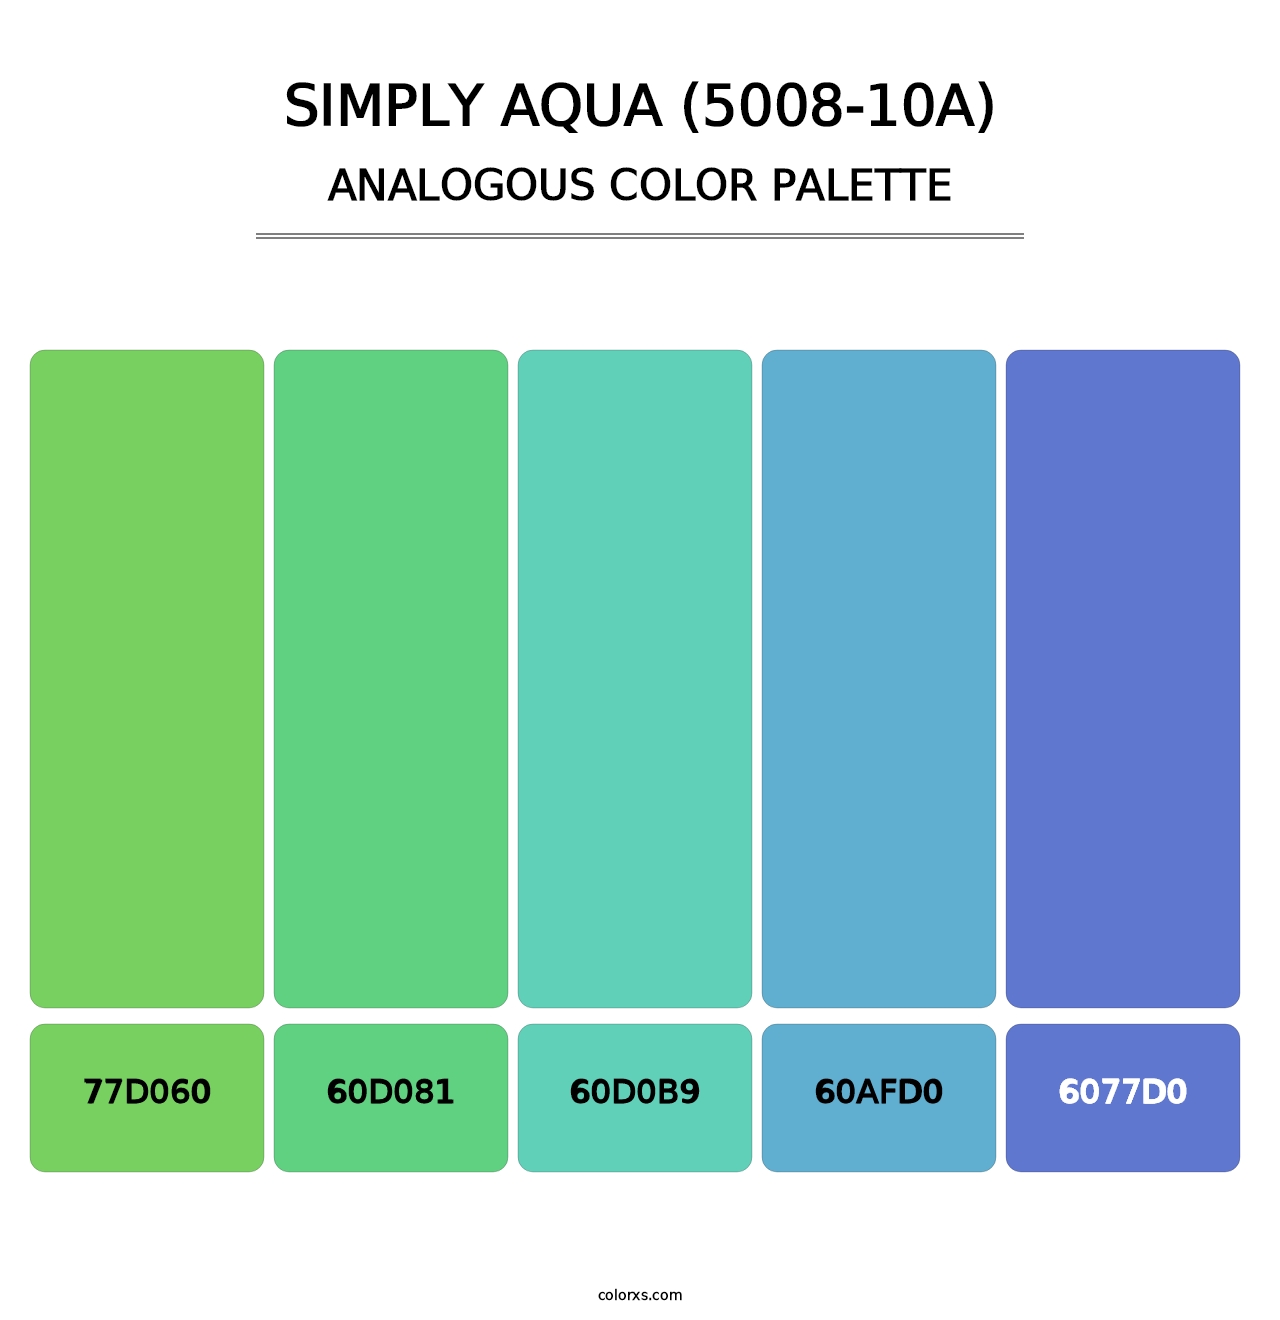 Simply Aqua (5008-10A) - Analogous Color Palette